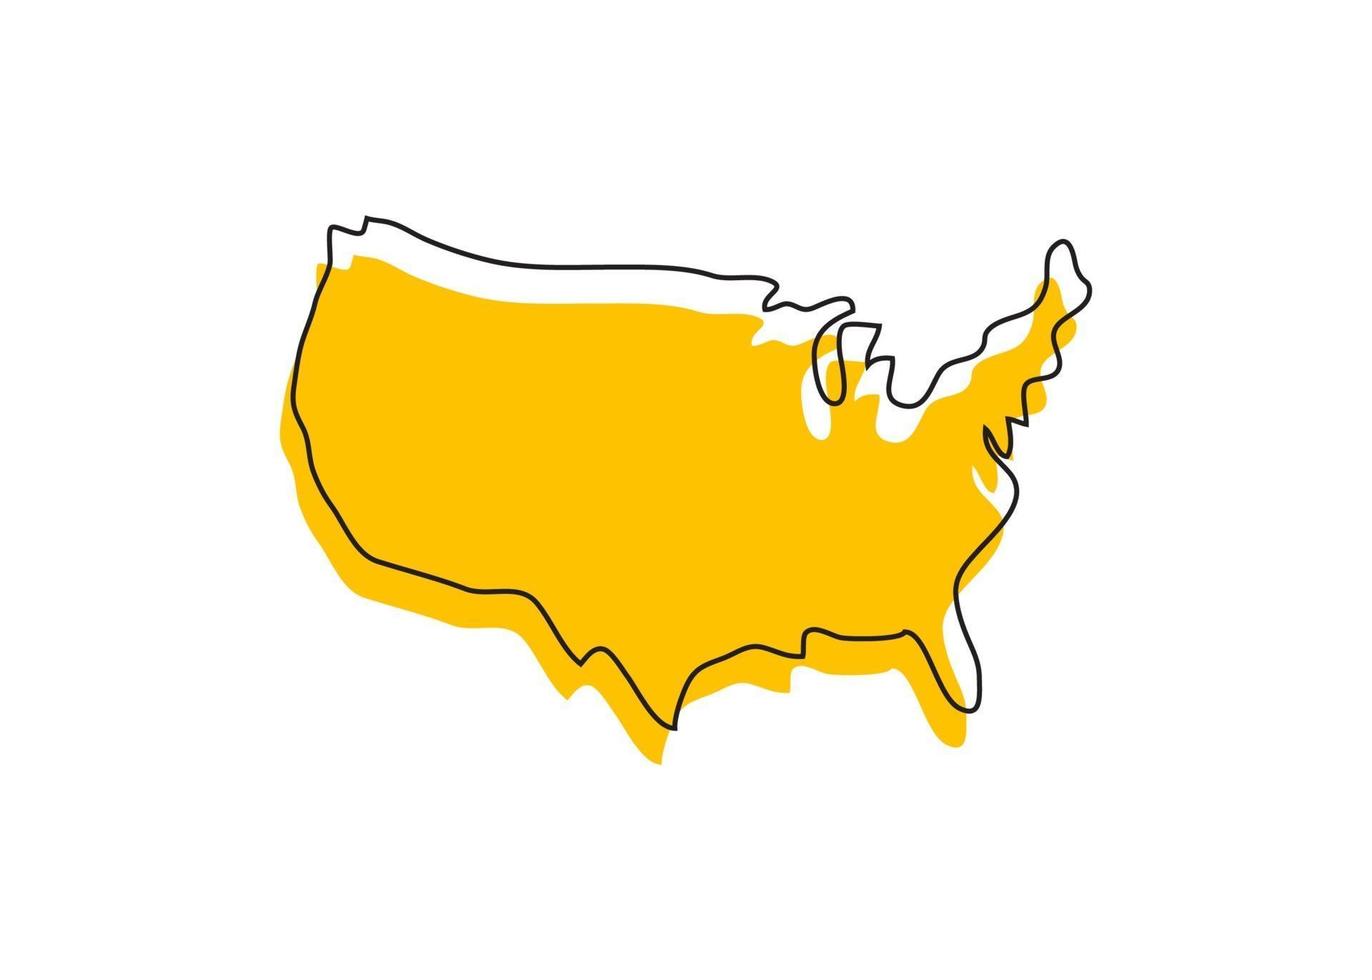 illustrazione di progettazione del modello di vettore di logo dell'icona della mappa dell'america